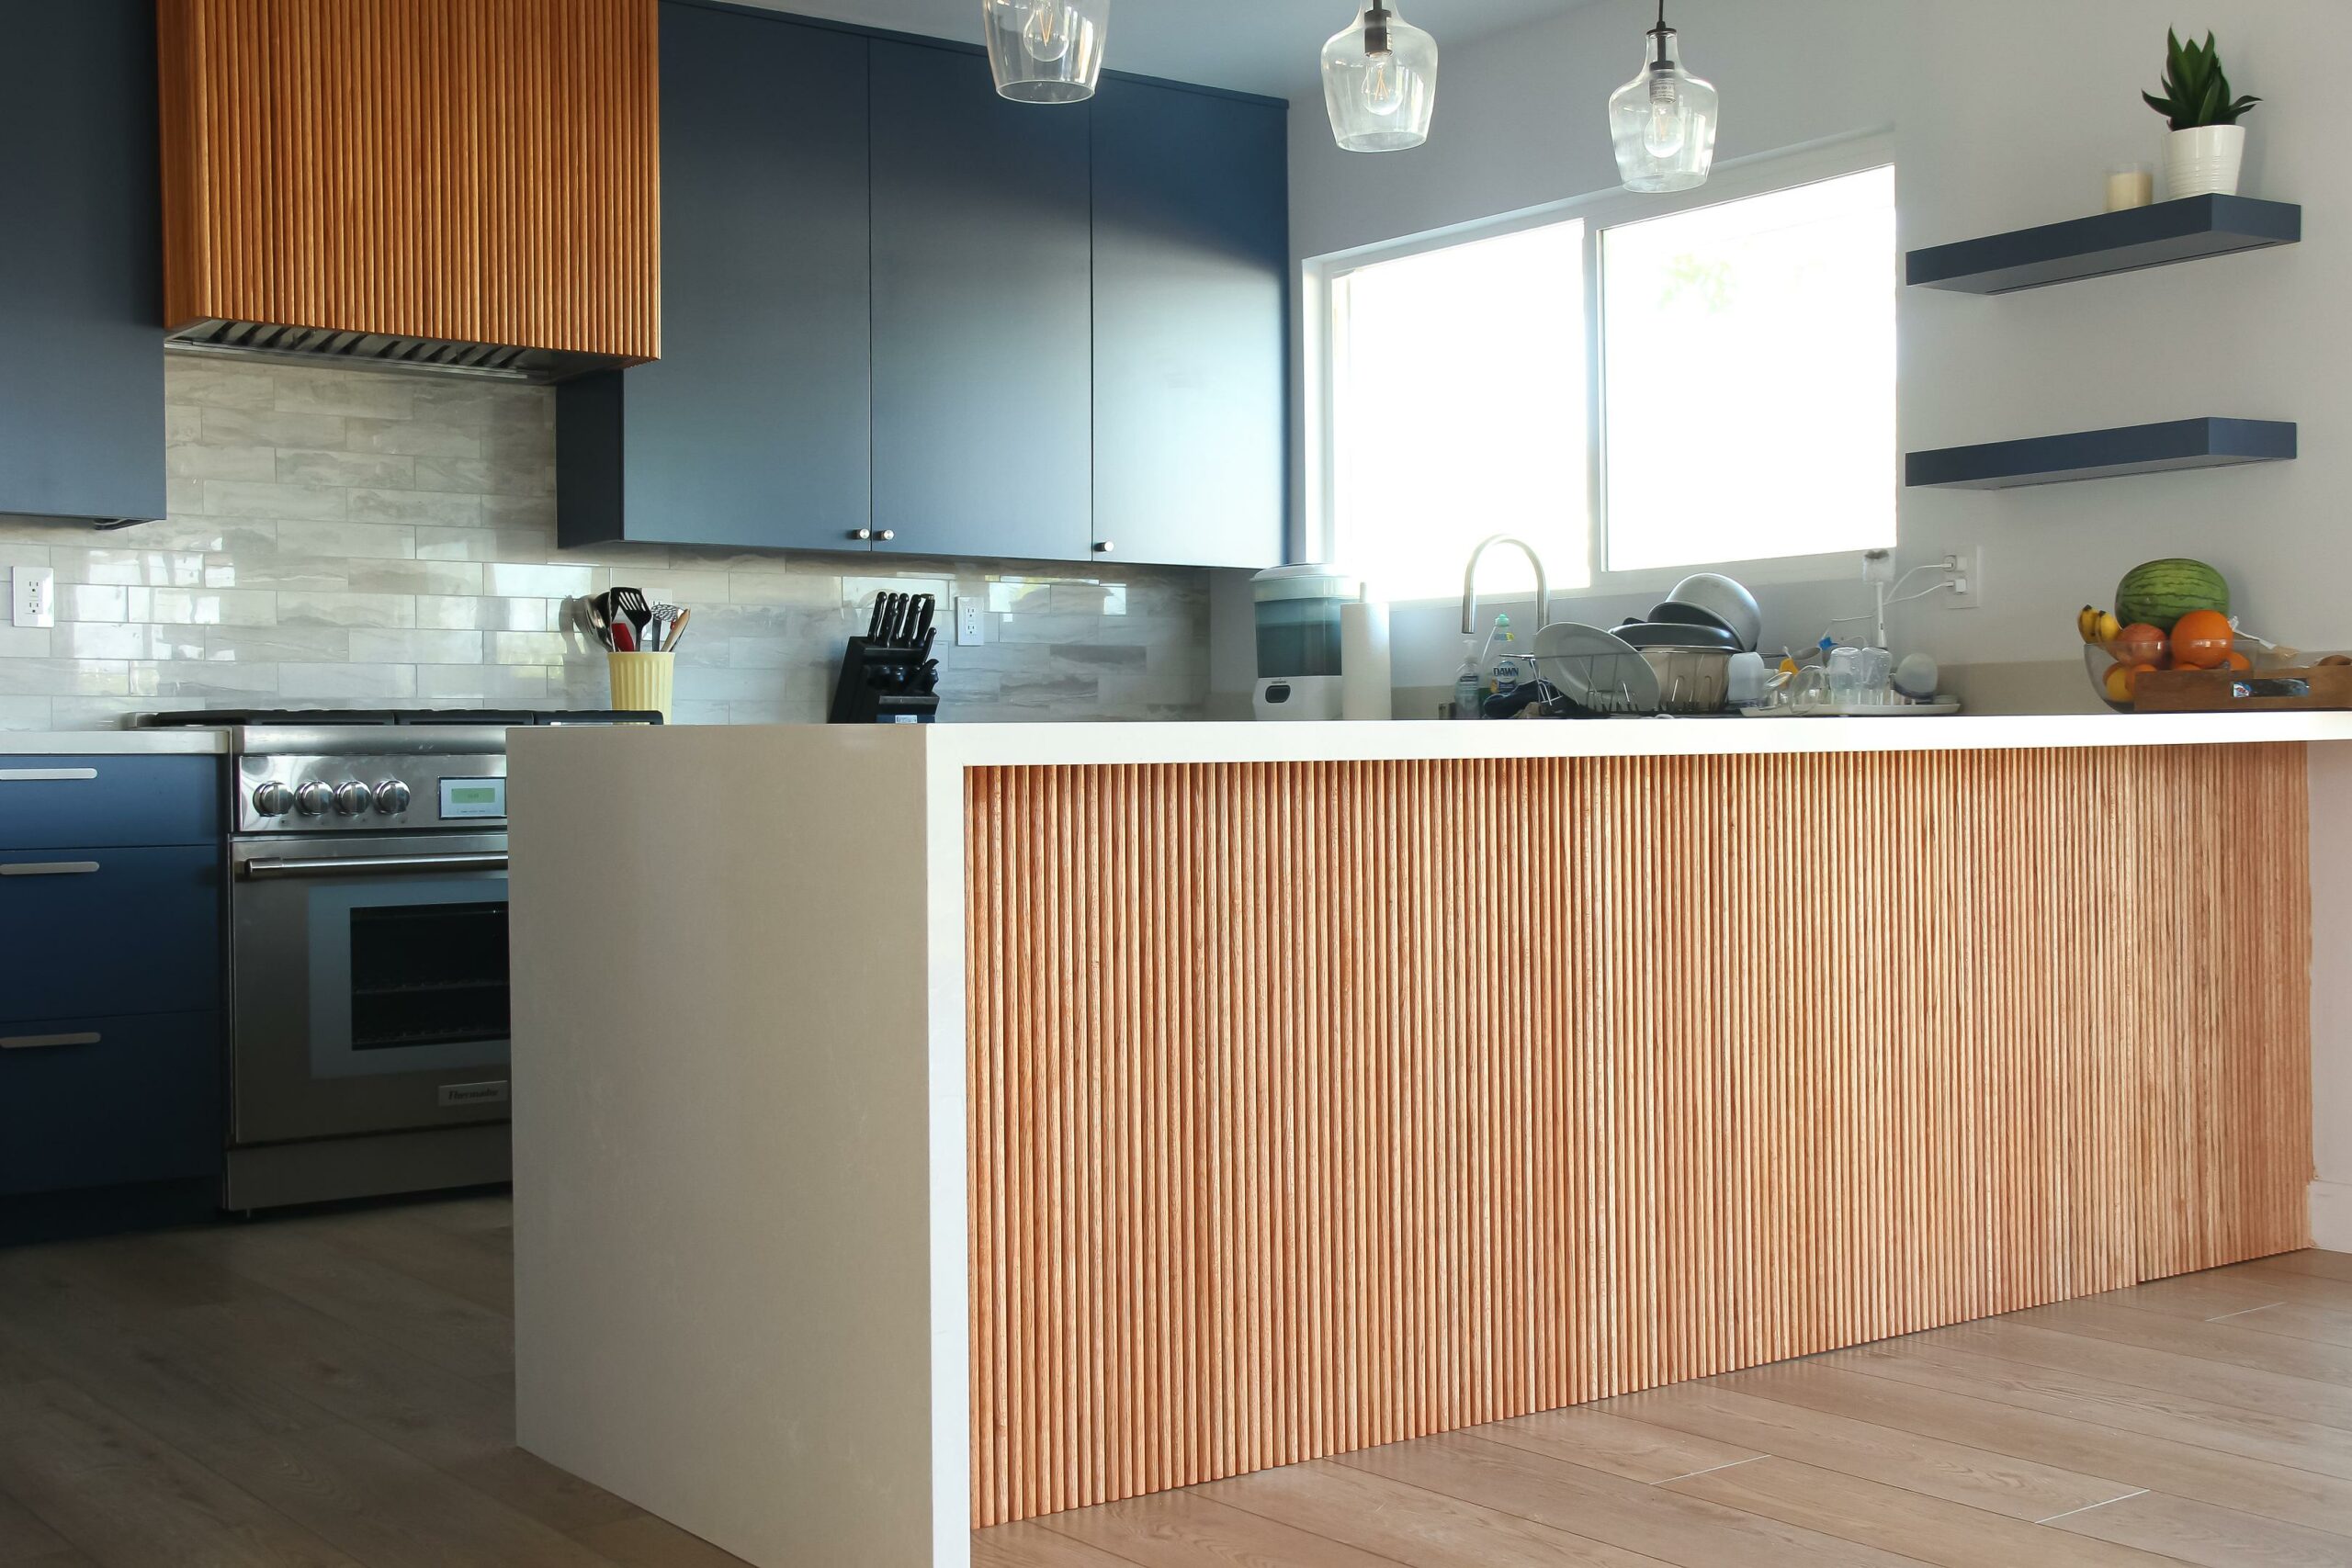 Modern kitchen interior with wooden design elements.